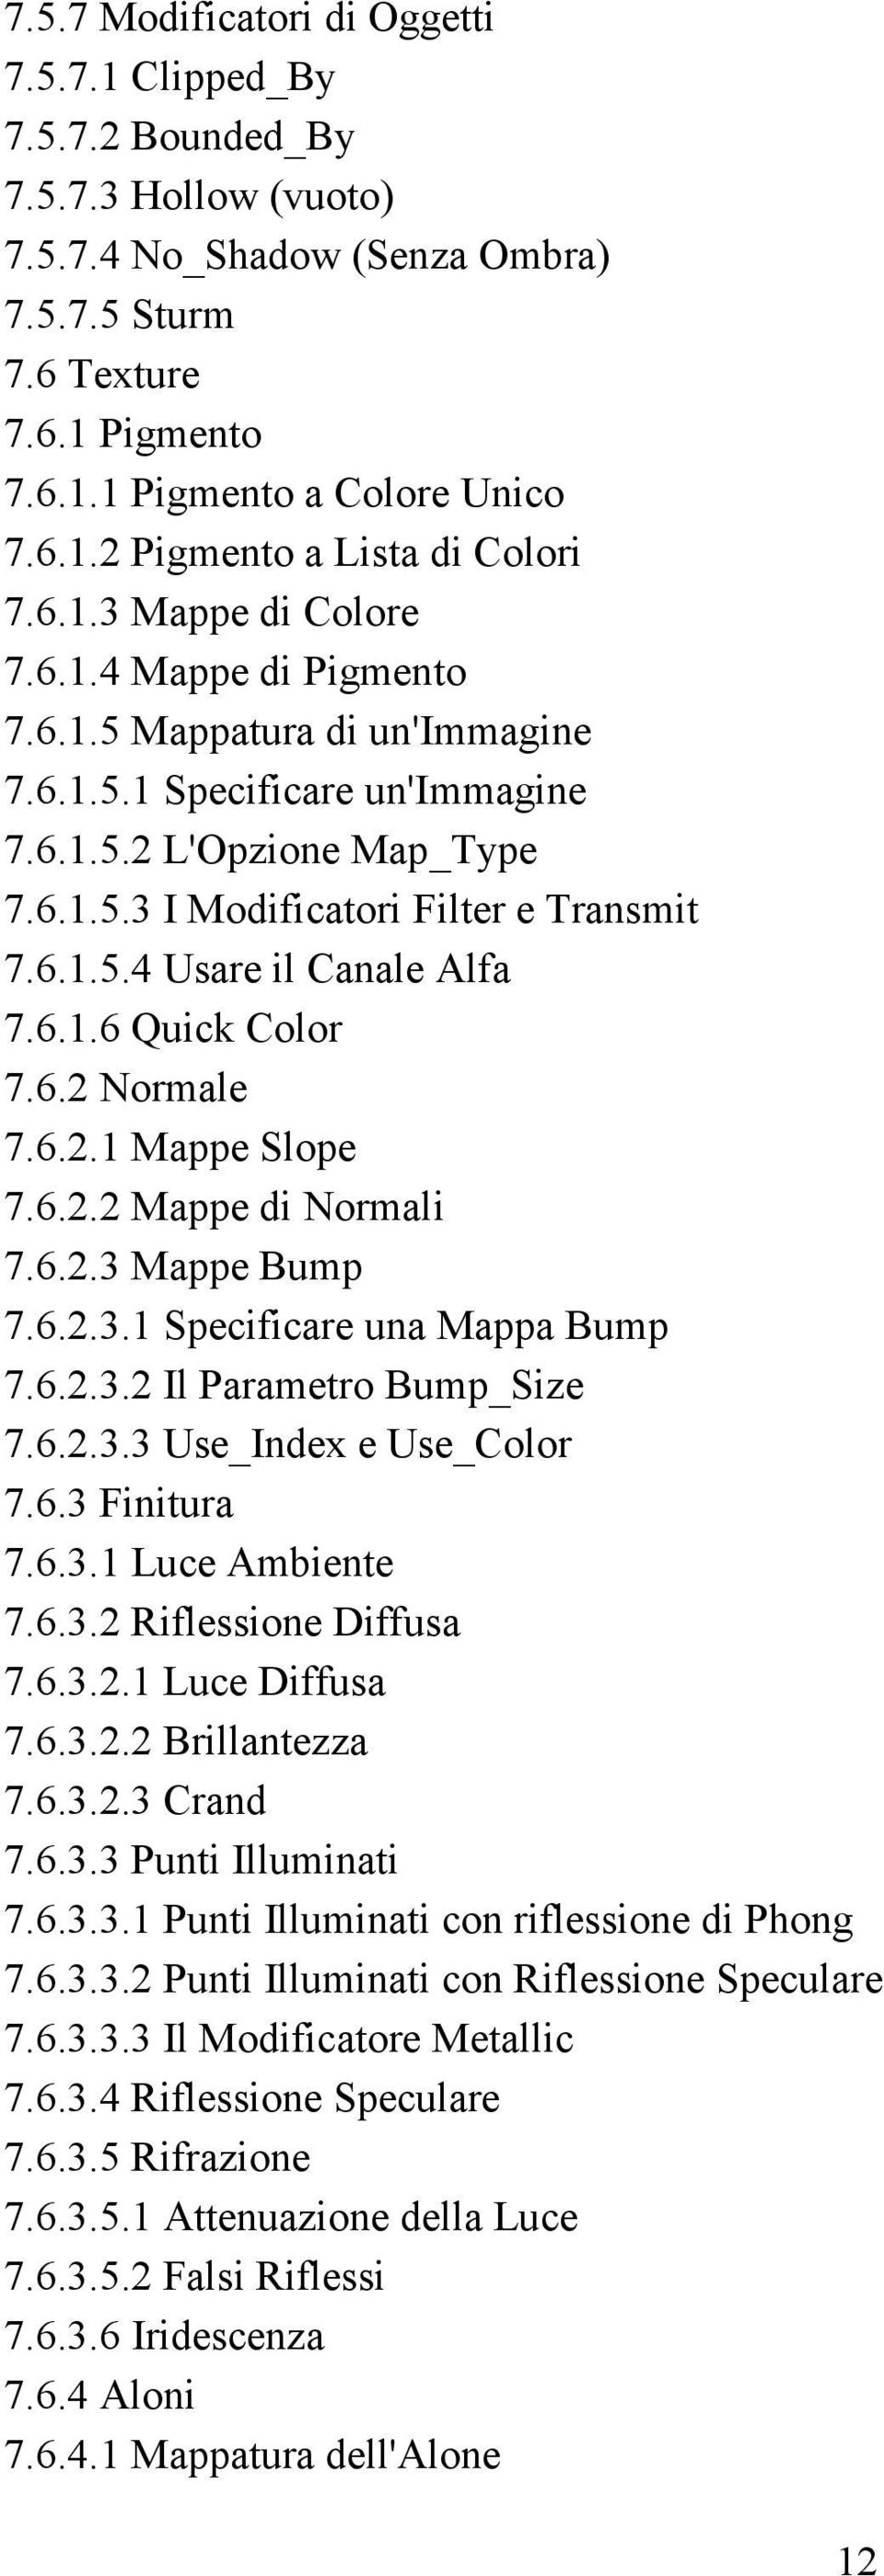 6.1.6 Quick Color 7.6.2 Normale 7.6.2.1 Mappe Slope 7.6.2.2 Mappe di Normali 7.6.2.3 Mappe Bump 7.6.2.3.1 Specificare una Mappa Bump 7.6.2.3.2 Il Parametro Bump_Size 7.6.2.3.3 Use_Index e Use_Color 7.